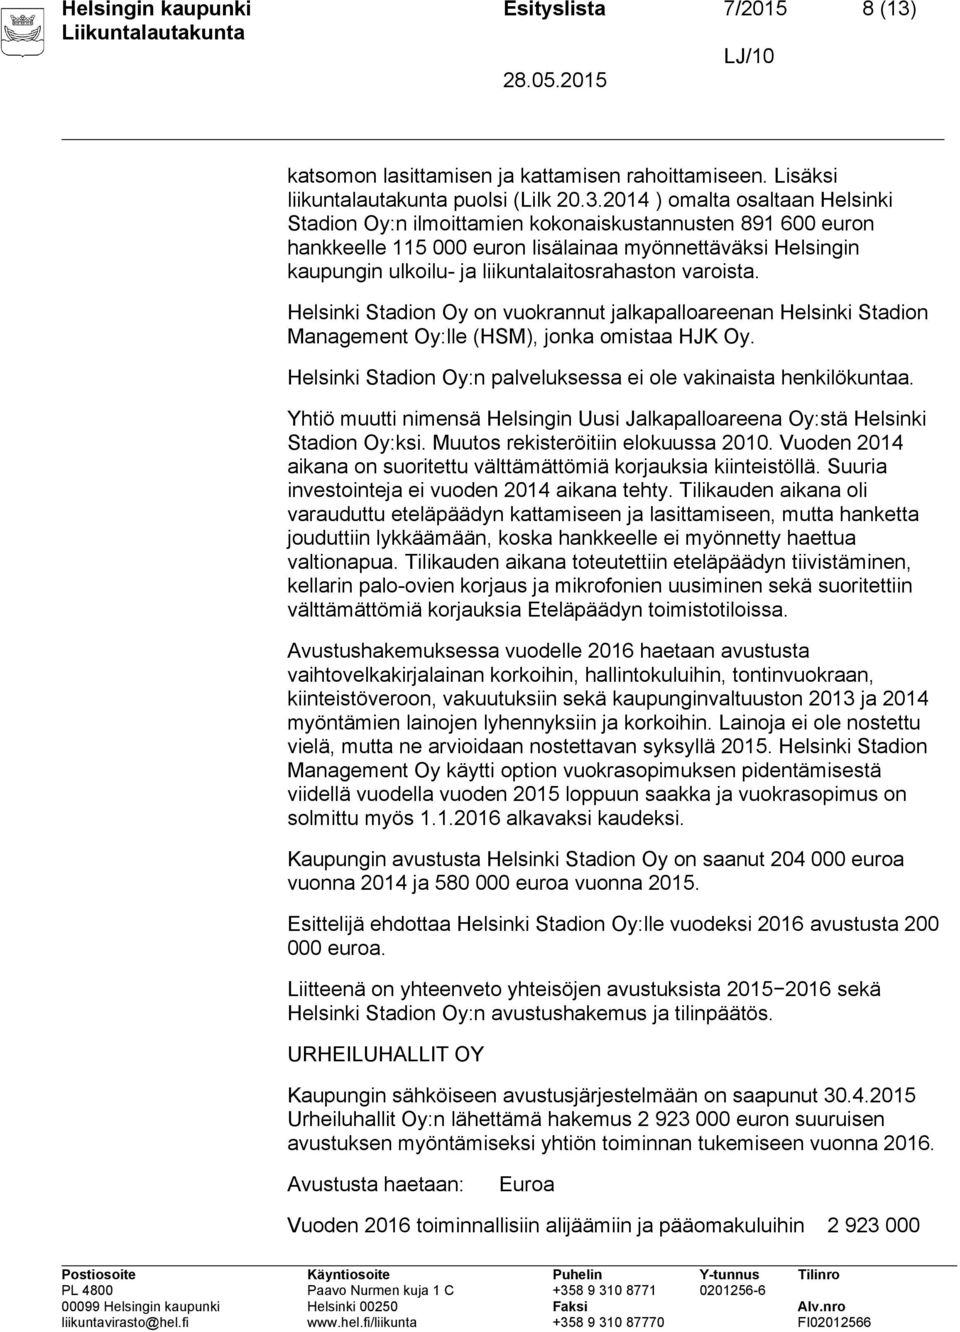 2014 ) omalta osaltaan Helsinki Stadion Oy:n ilmoittamien kokonaiskustannusten 891 600 euron hankkeelle 115 000 euron lisälainaa myönnettäväksi Helsingin kaupungin ulkoilu- ja liikuntalaitosrahaston